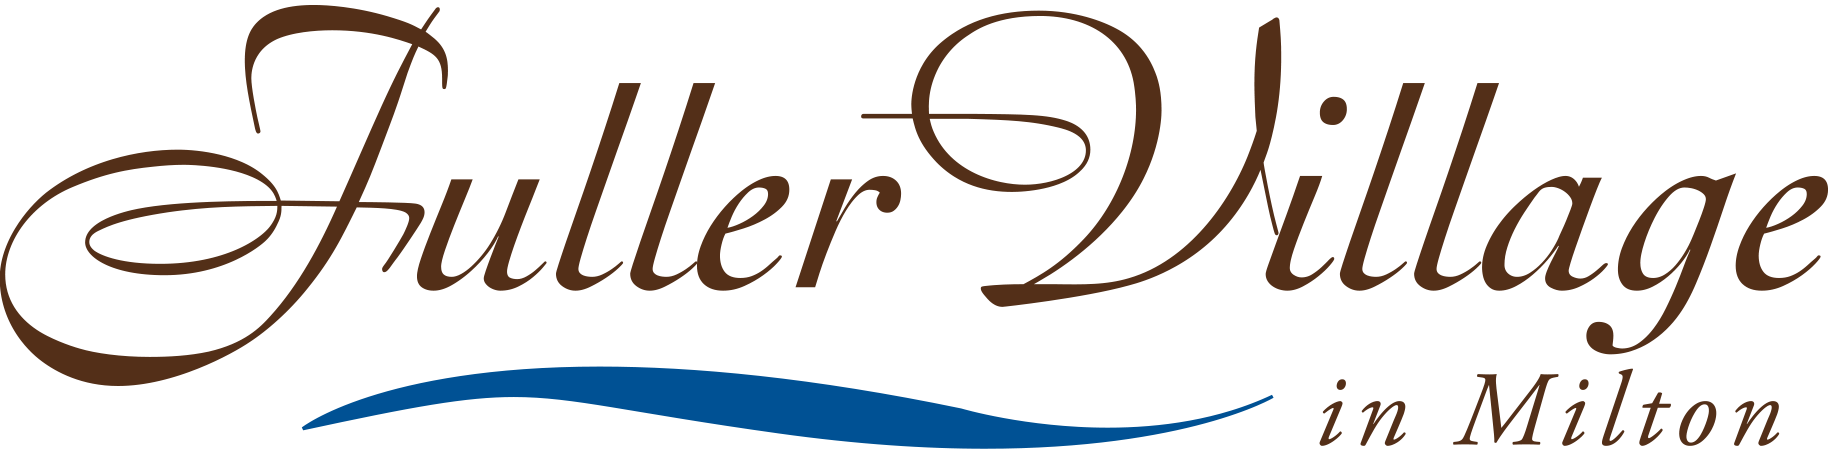 Fuller Village logo